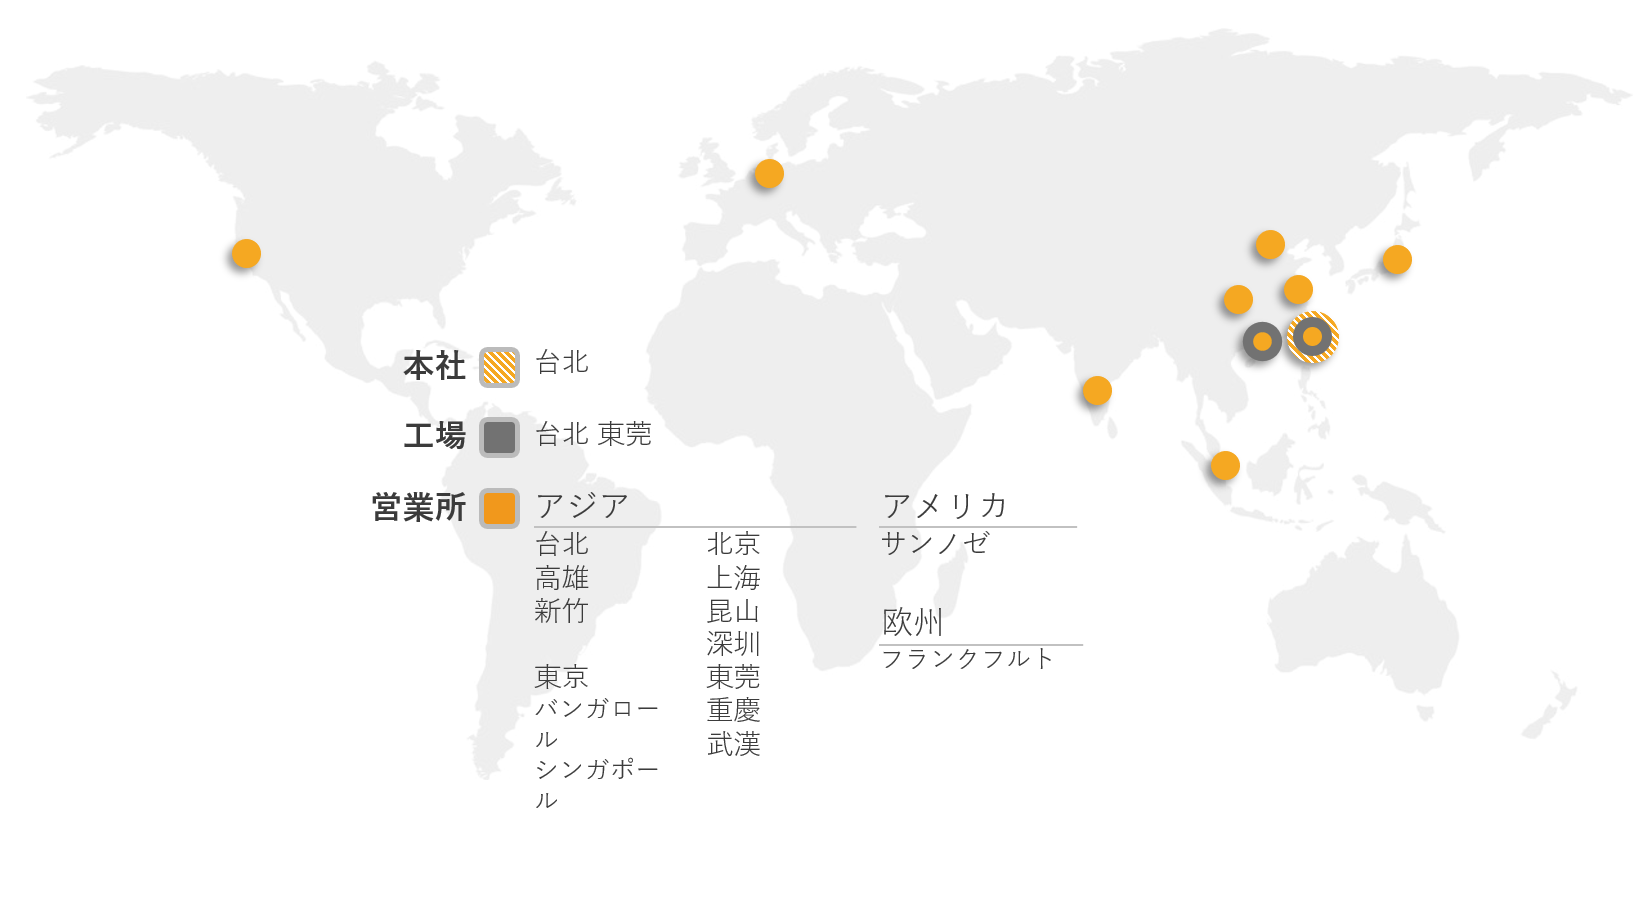 各国の営業所の地図です